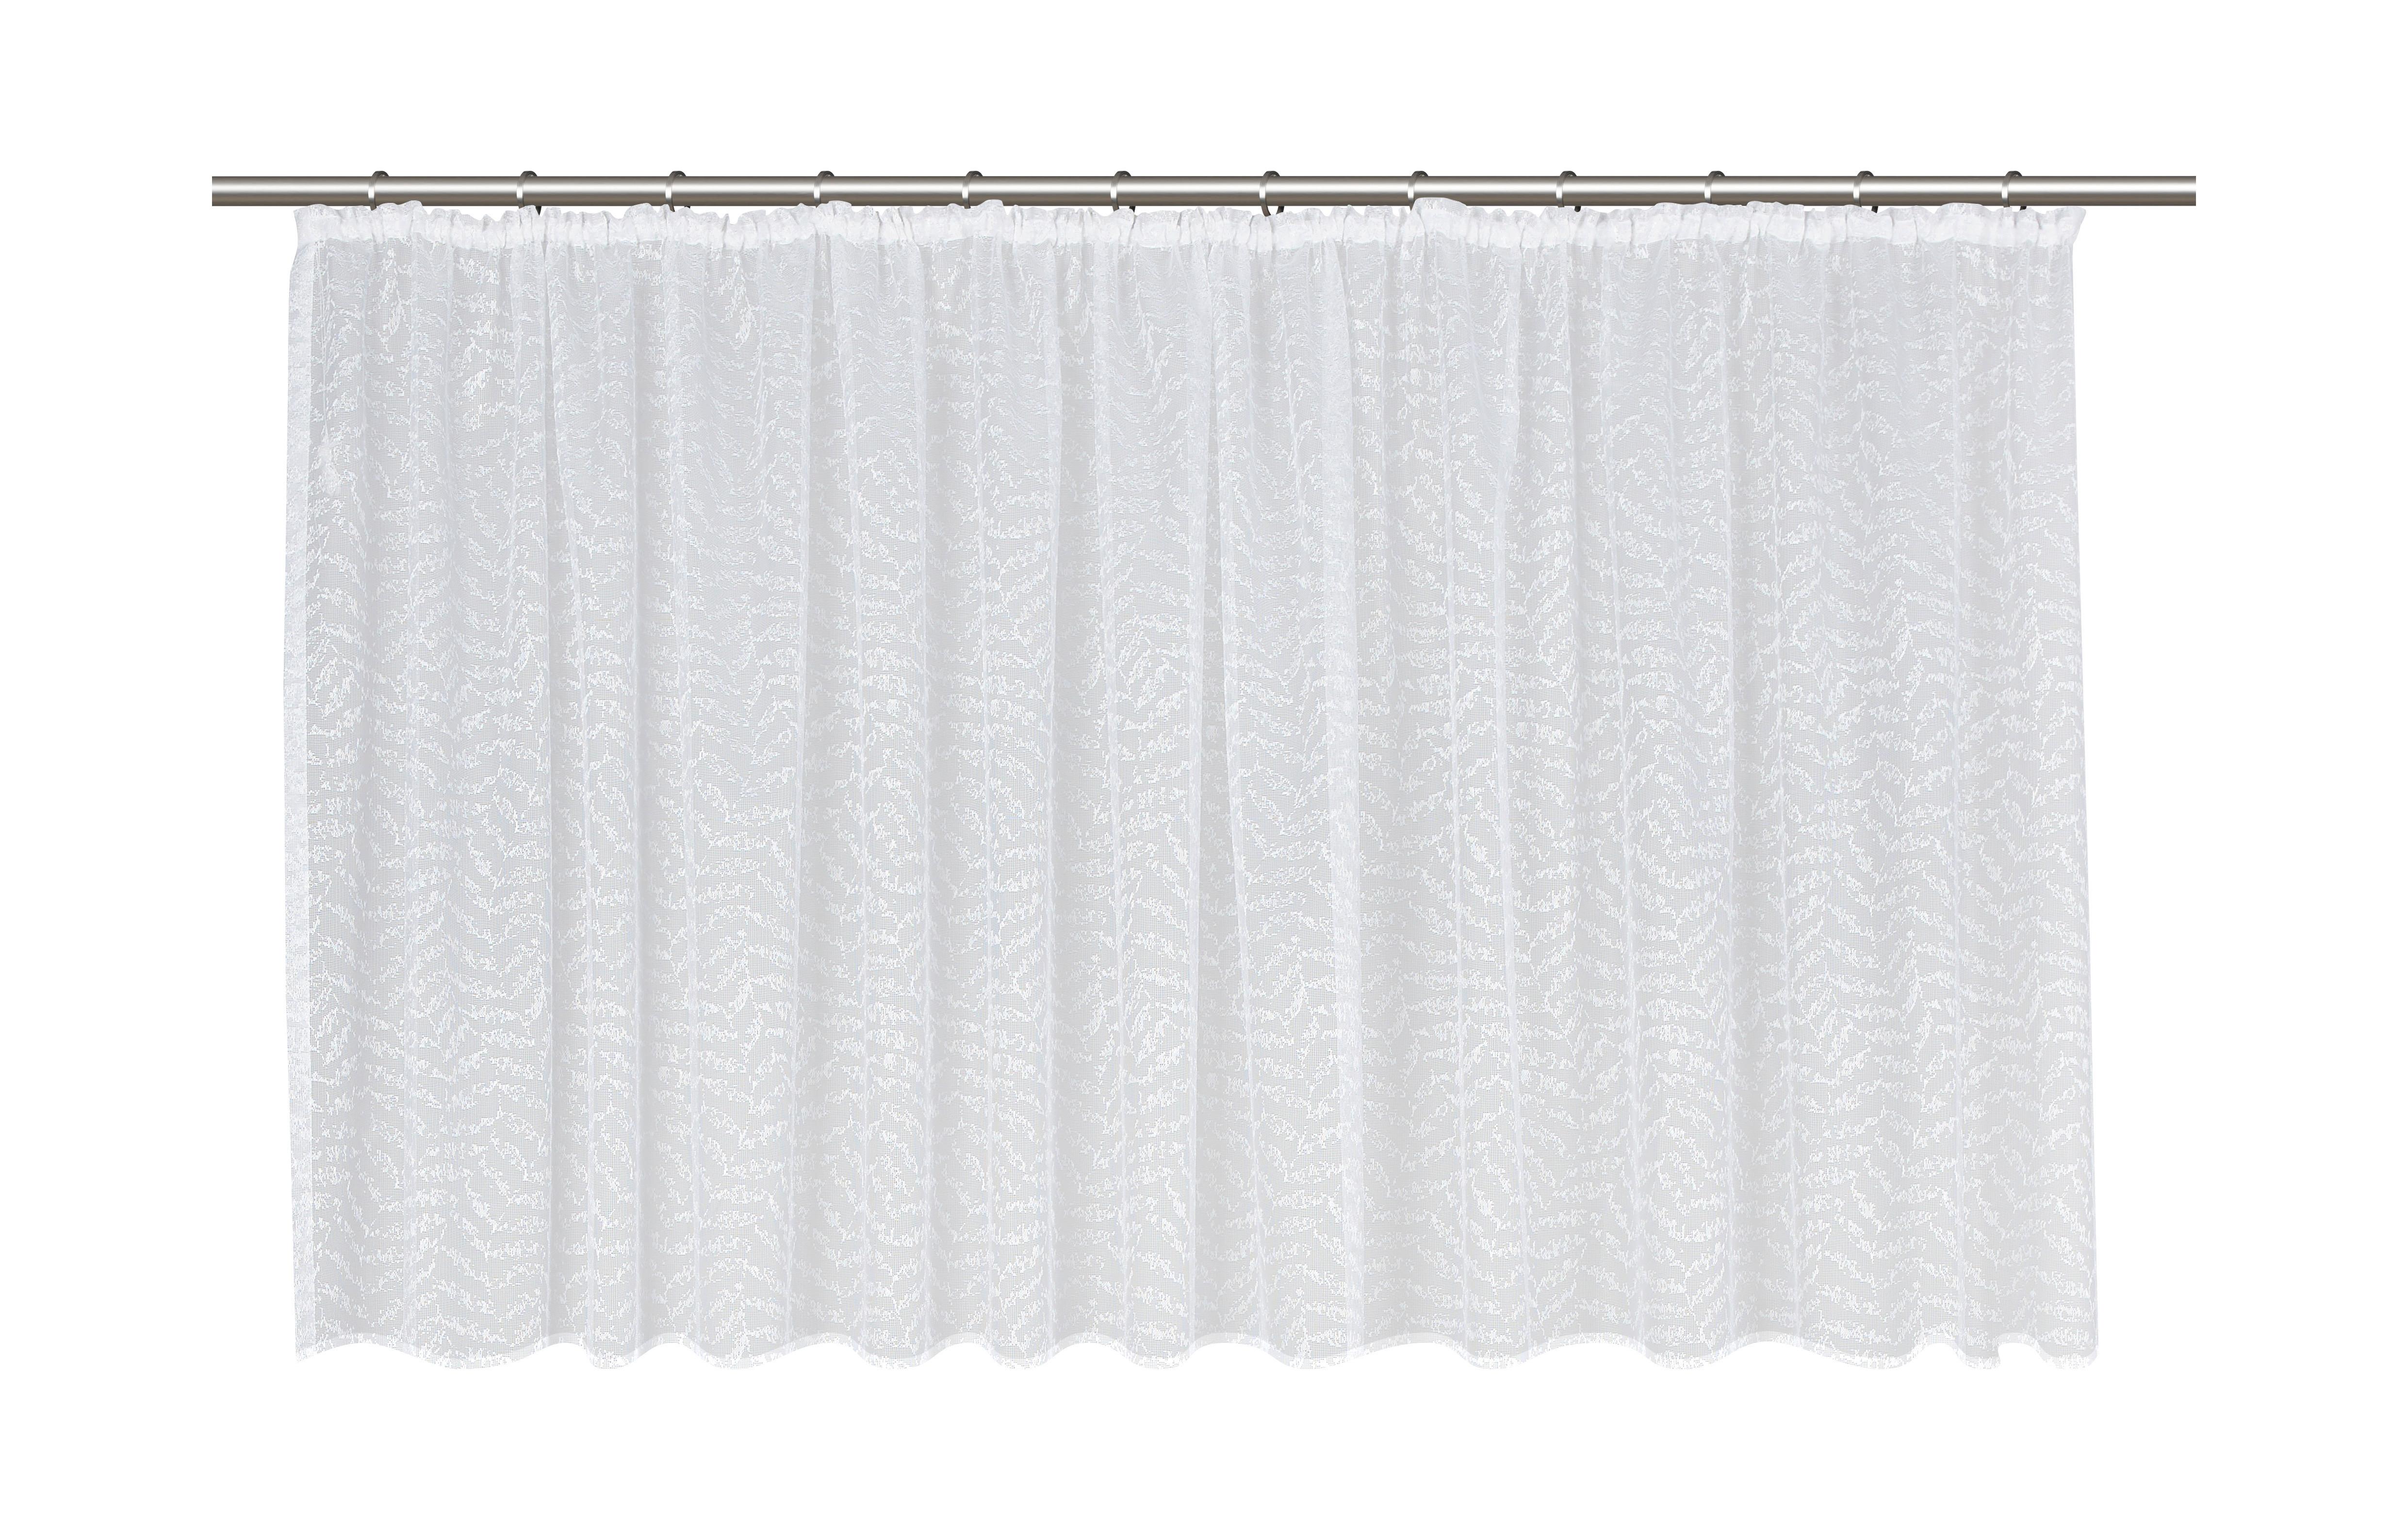 Készfüggöny Rita Store 300/145cm - Fehér, konvencionális, Textil (300/145cm) - Modern Living